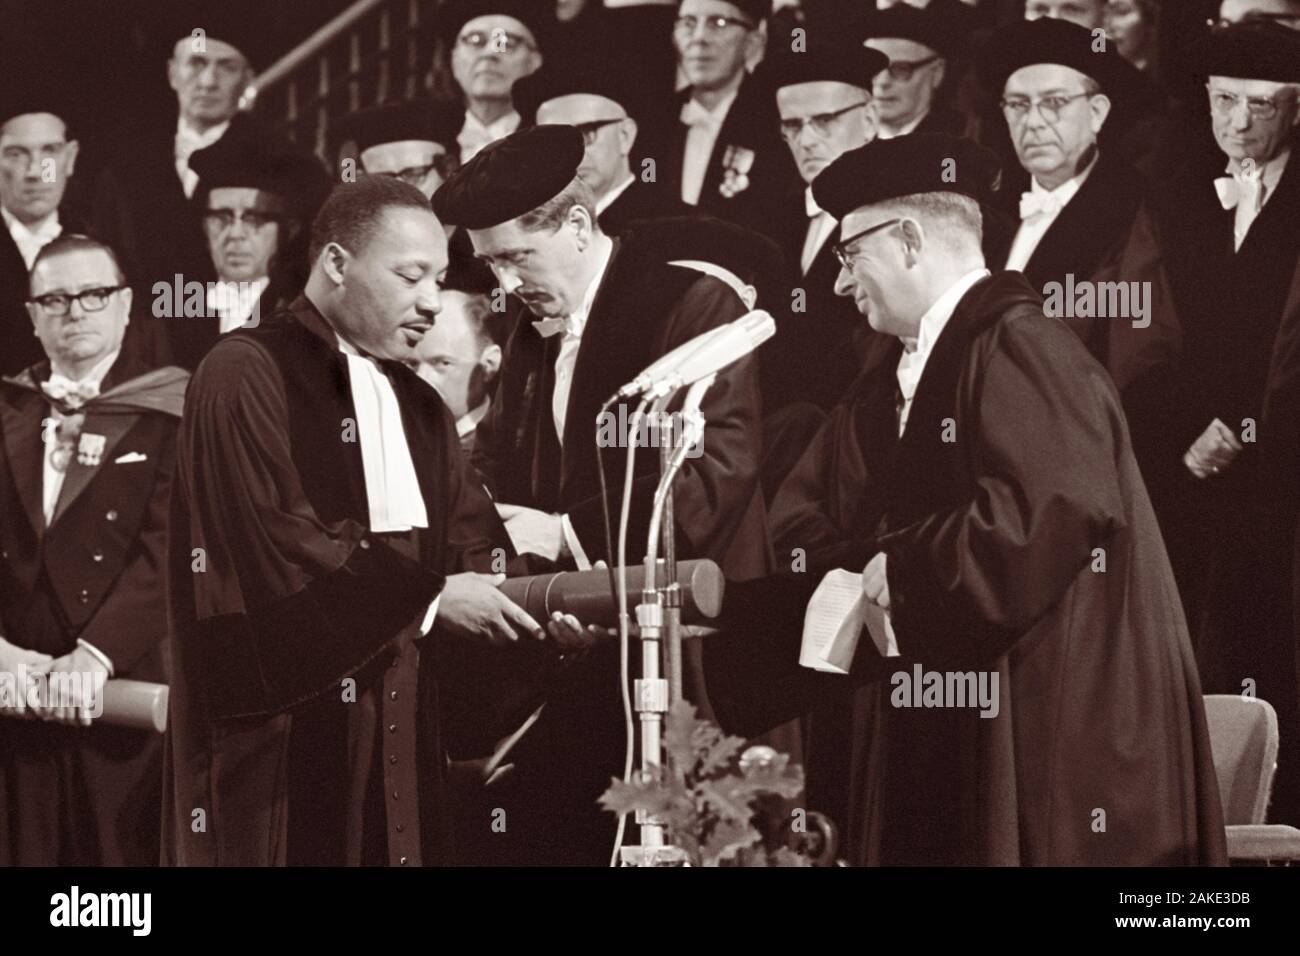 Dr. Martin Luther King, Jr. Verleihung der Ehrendoktorwürde in Social Science von der FE (Vrije Universiteit, "Freie Universität") in Amsterdam, Nordholland am 20. Oktober 1965. Stockfoto